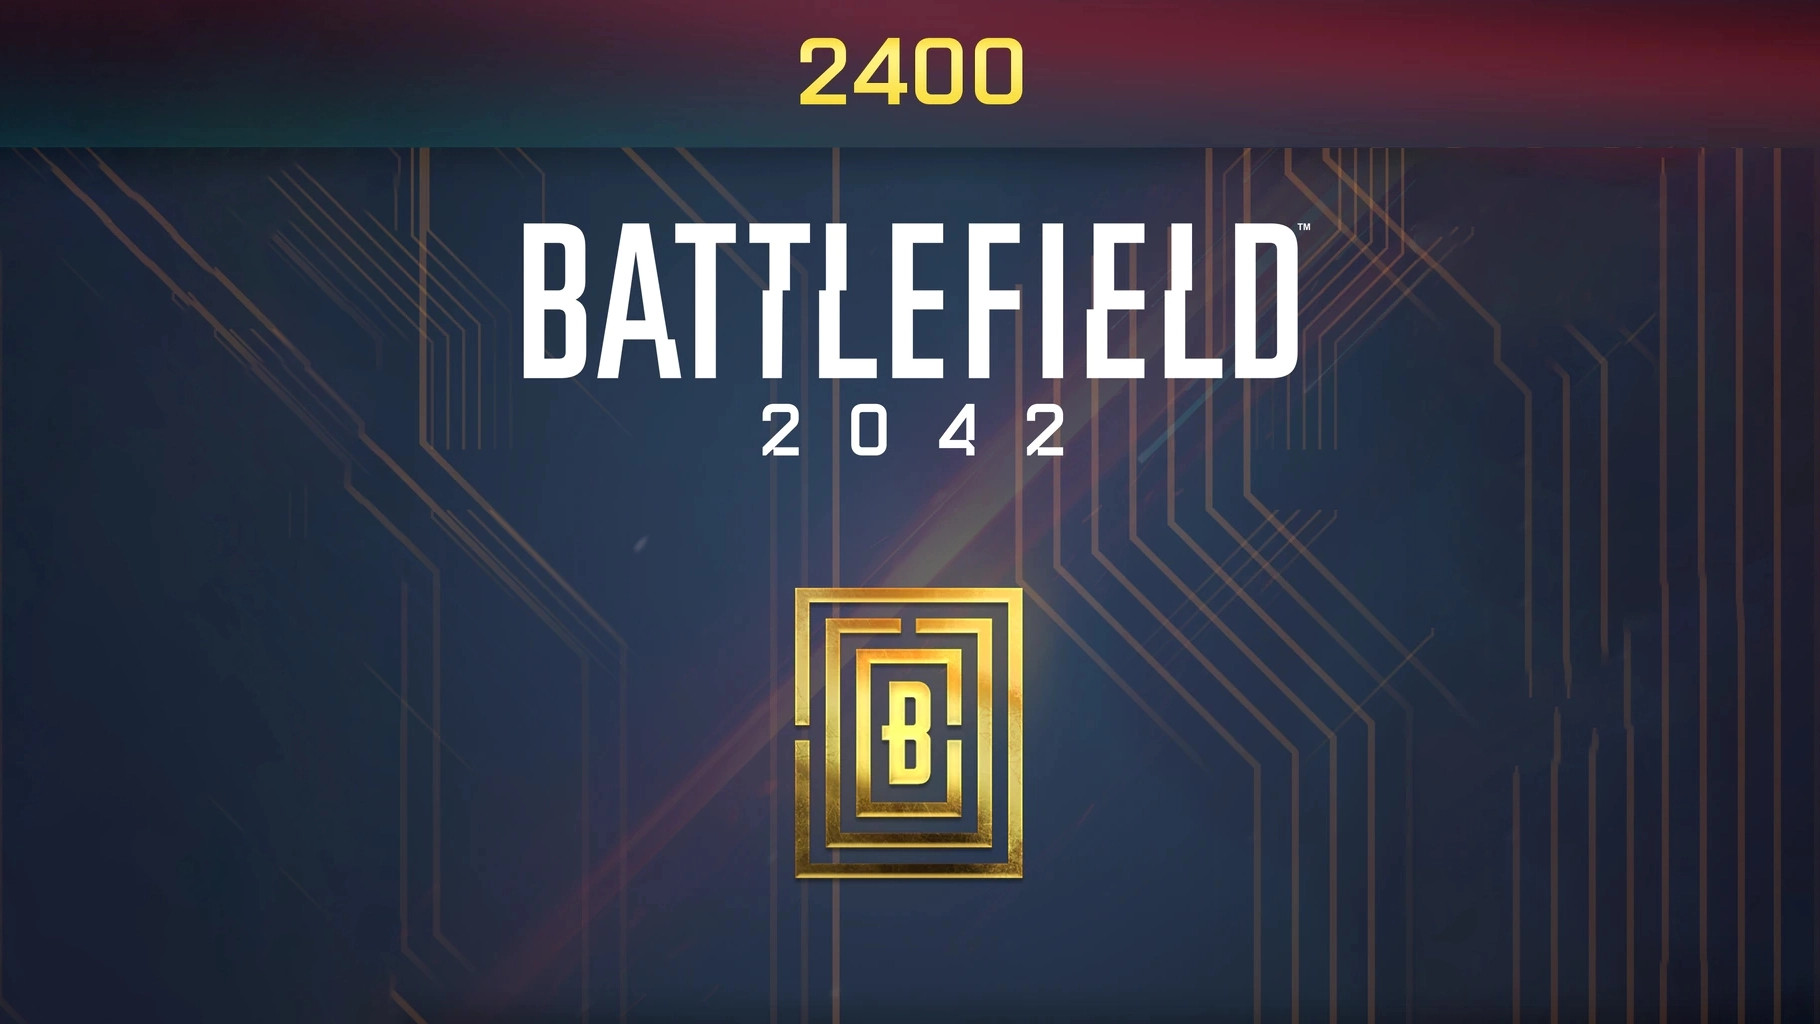 Battlefield 2042 - 2400 BFC Balance XBOX One / Xbox Series X|S CD Key [USD 20.9]